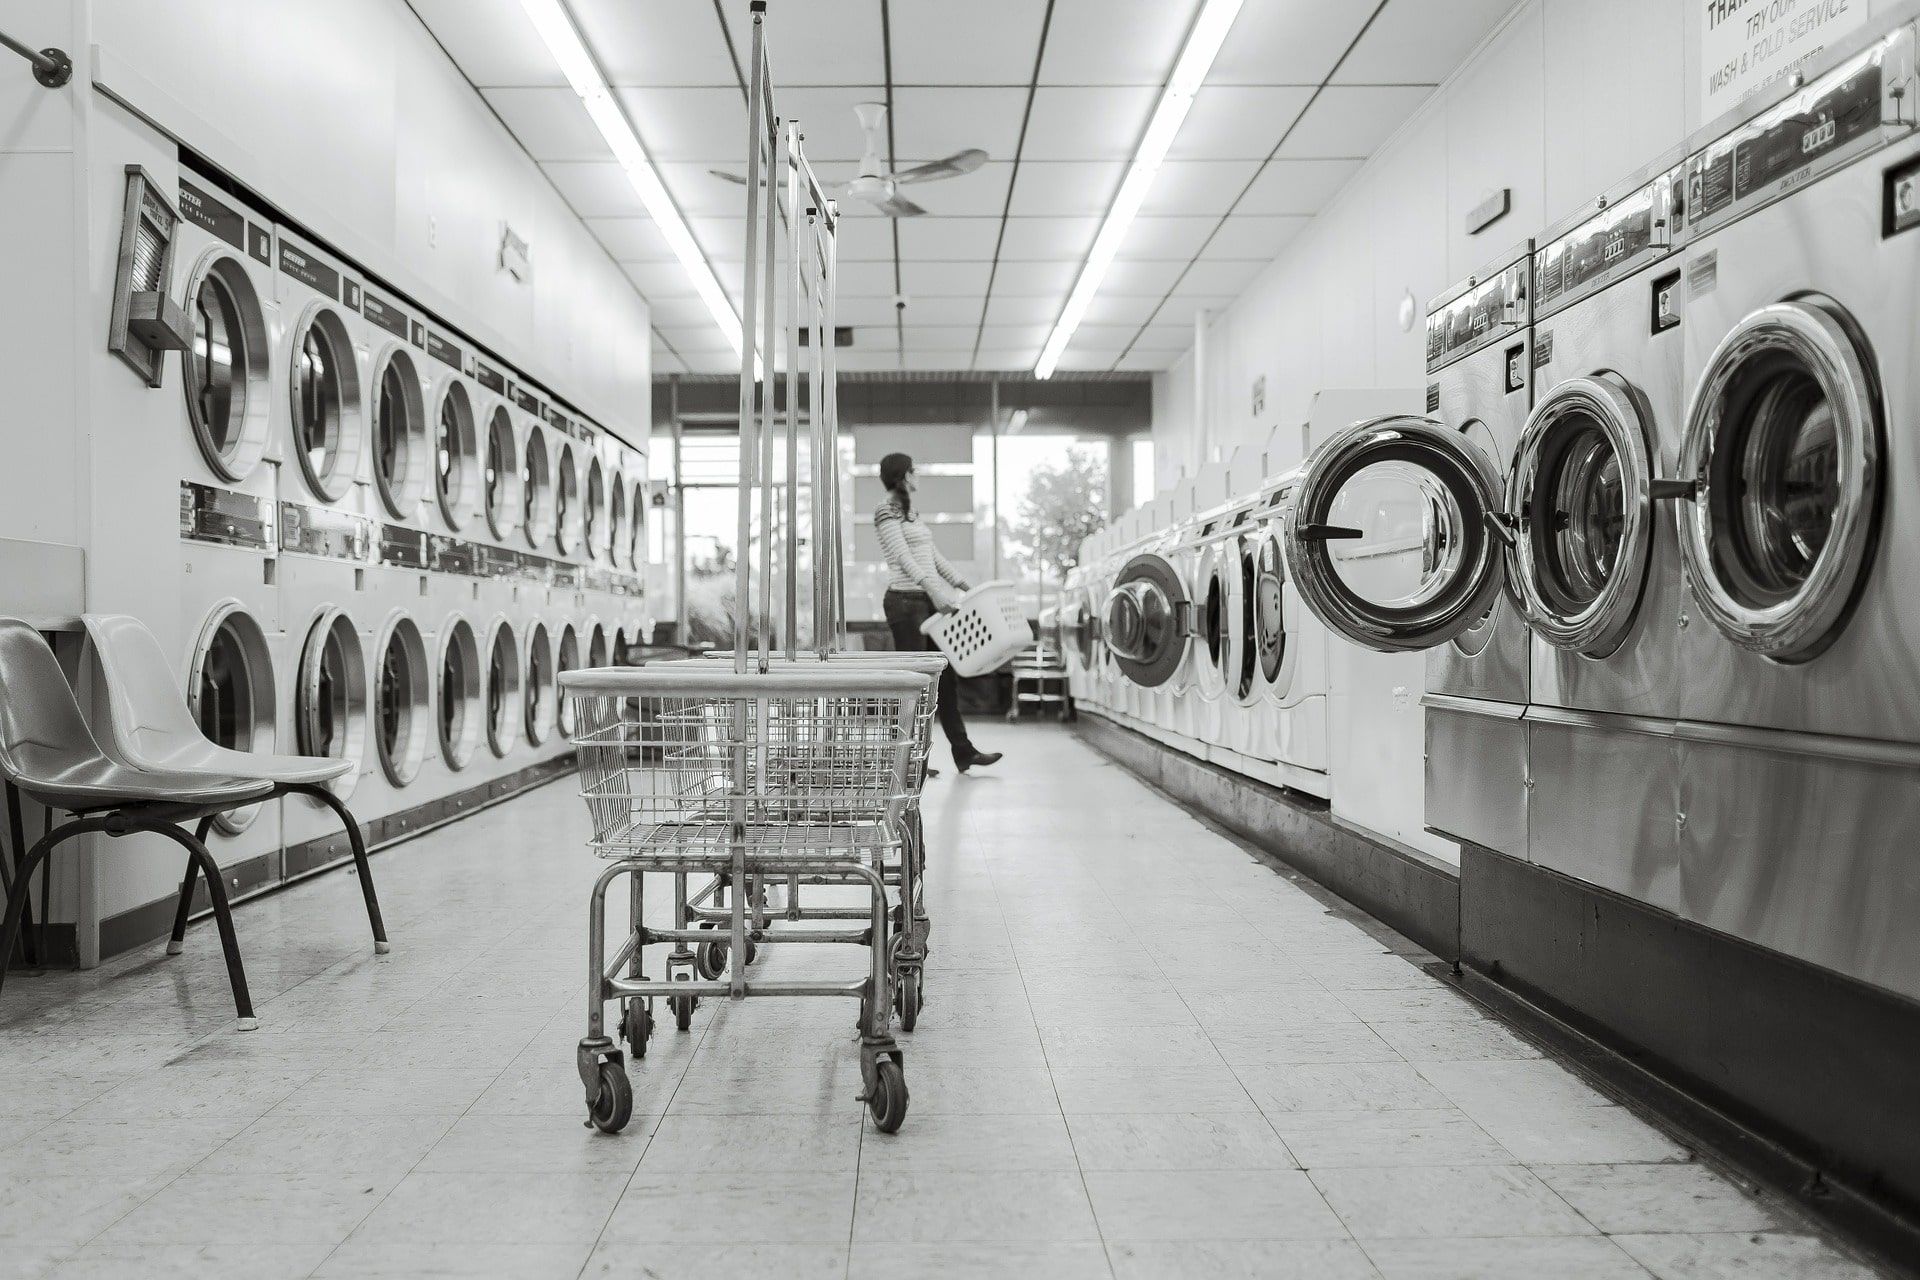 lavanderia industrial